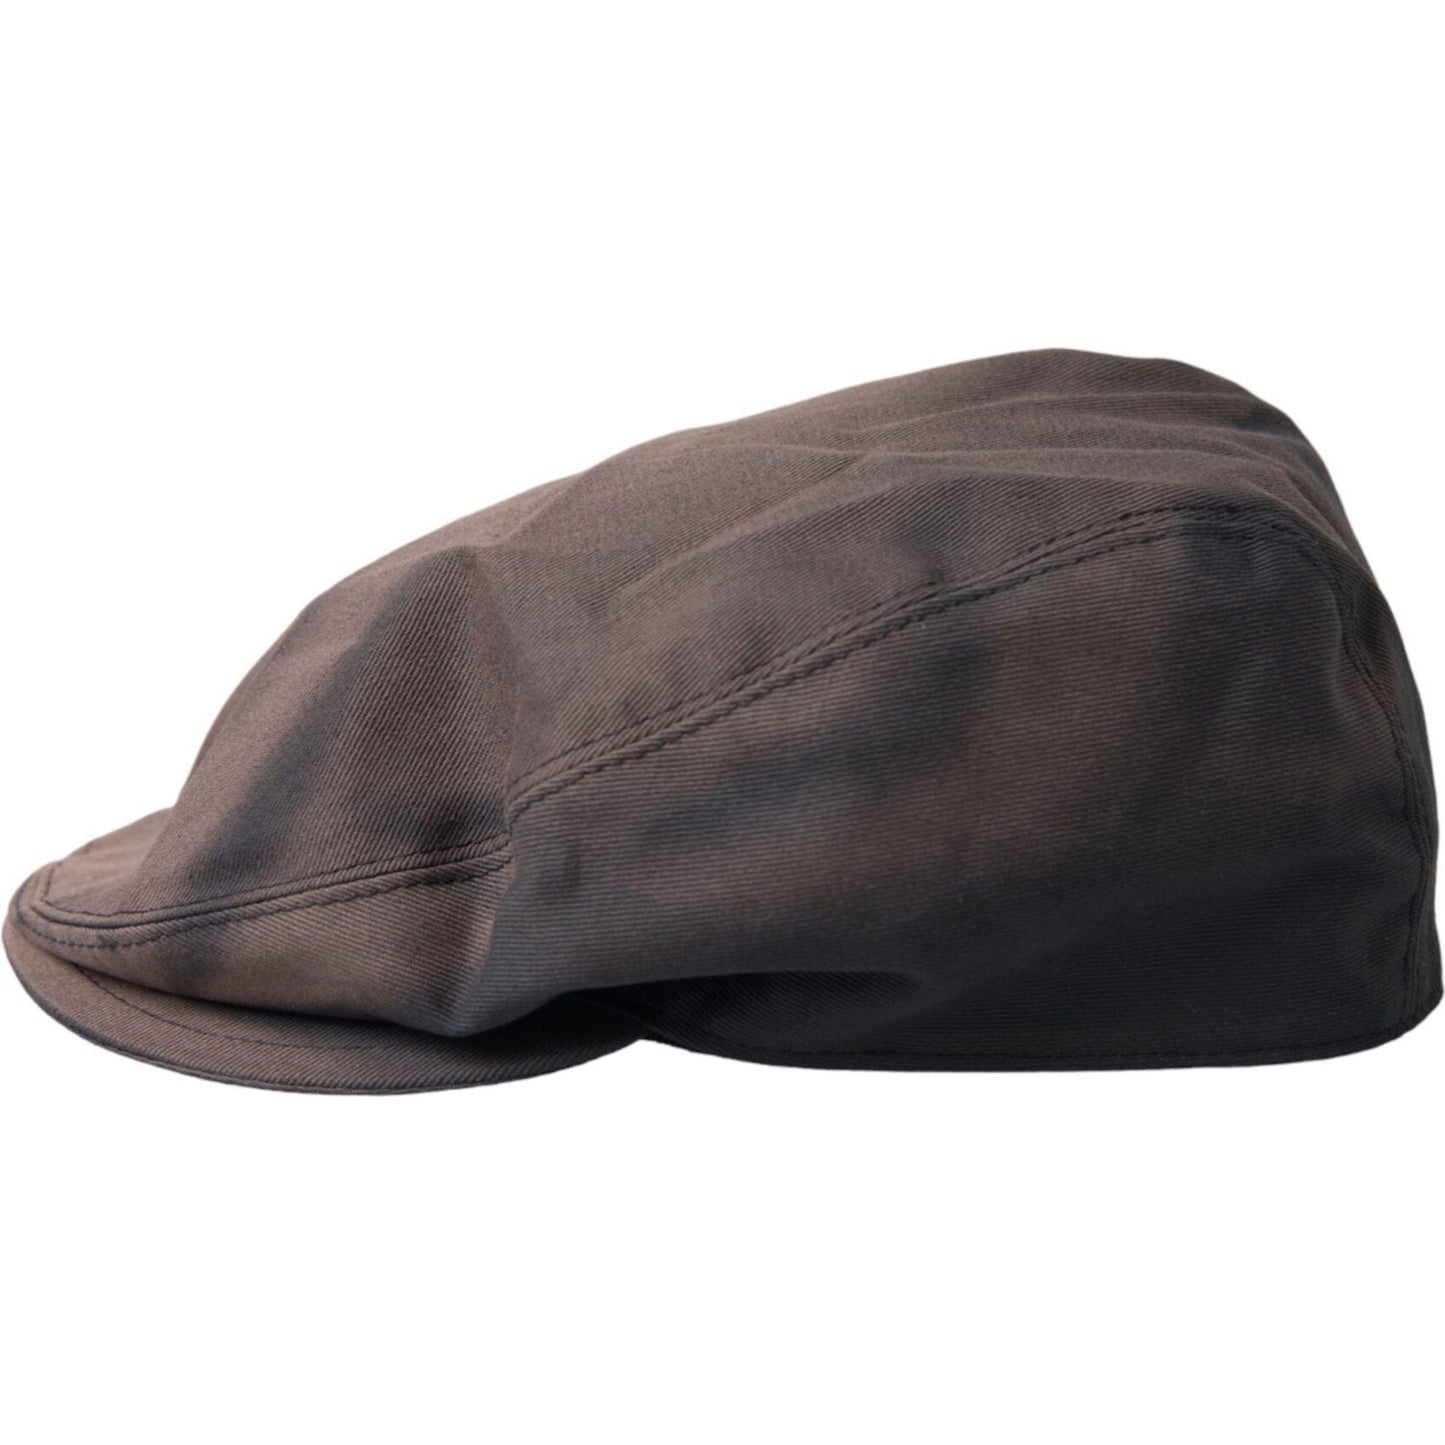 Brown Cotton Cloth Newsboy Hat Men